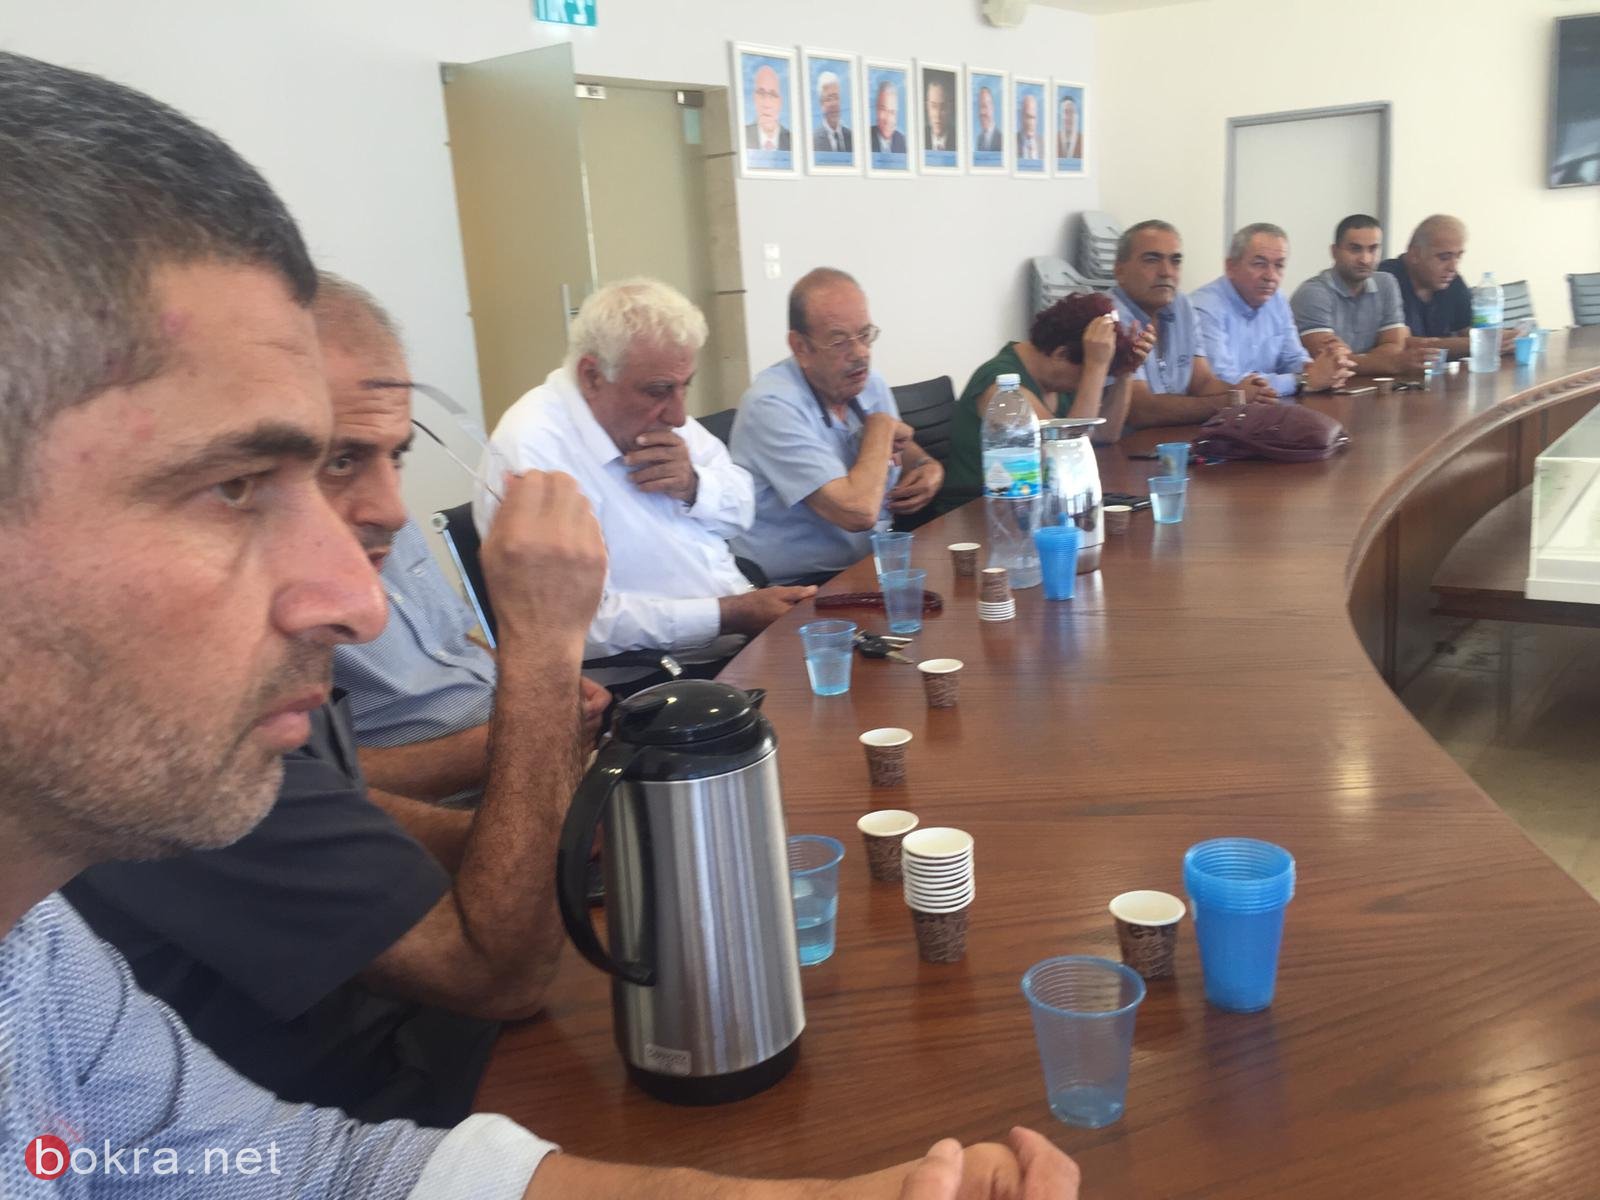 سخنين: البلدية واللجنة الشعبية تجتمع لإتمام التحضيرات لنشاطات إحياء ذكرى هبه القدس والأقصى-3